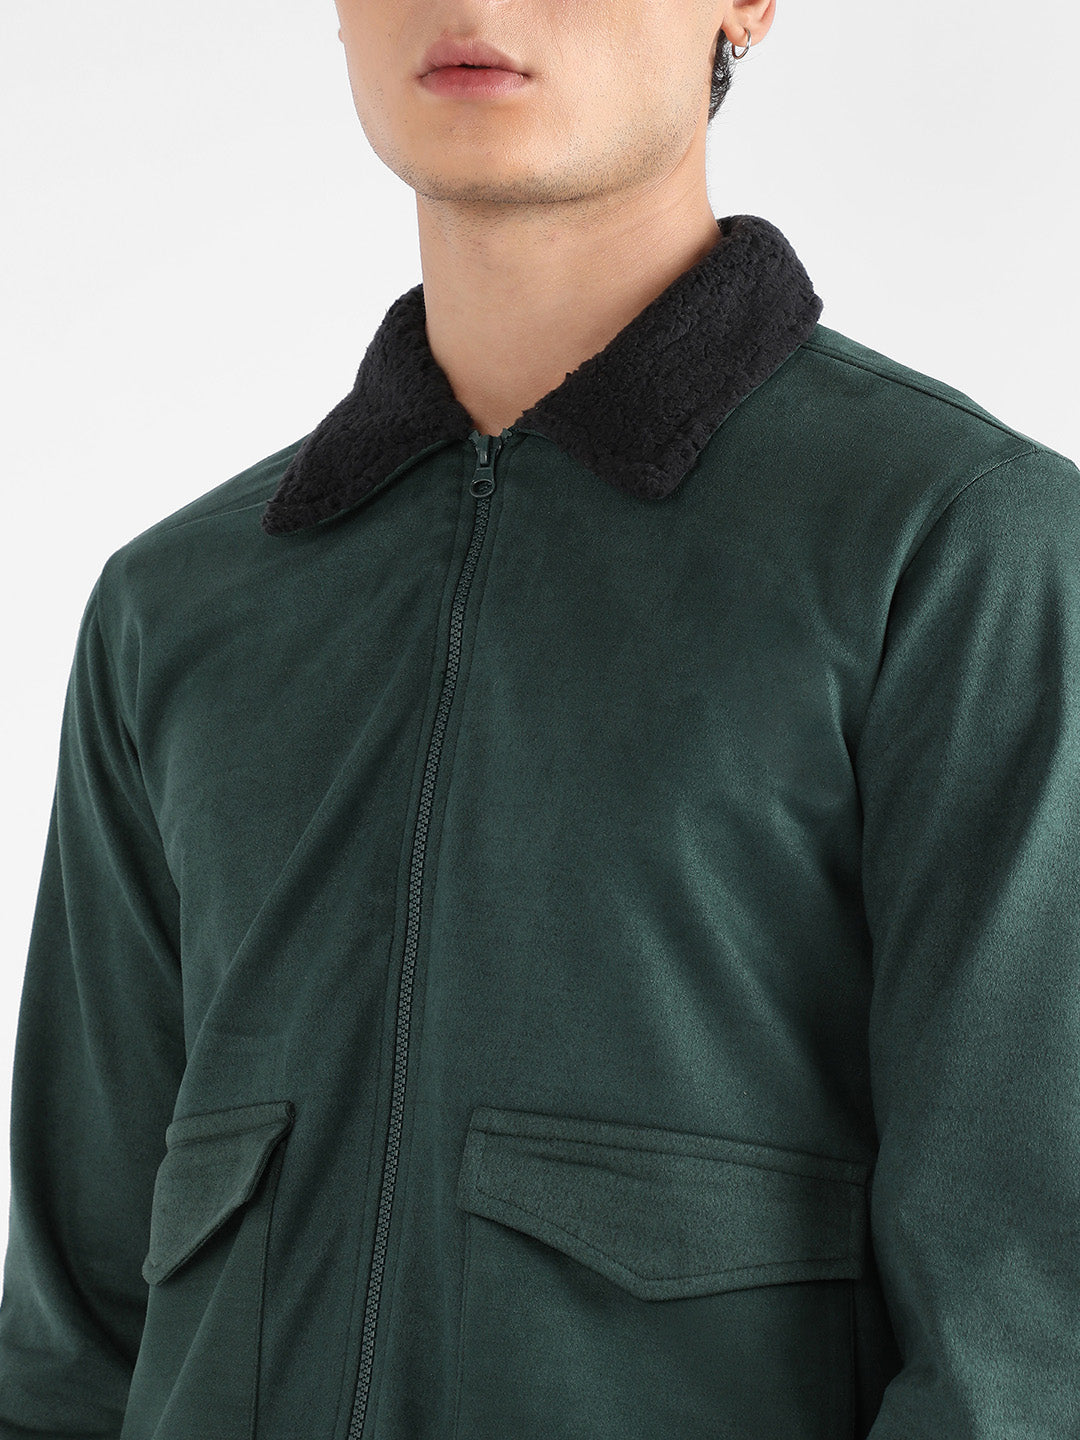 Men's Emerald Green Zip-Front Jacket With Fleece Collar